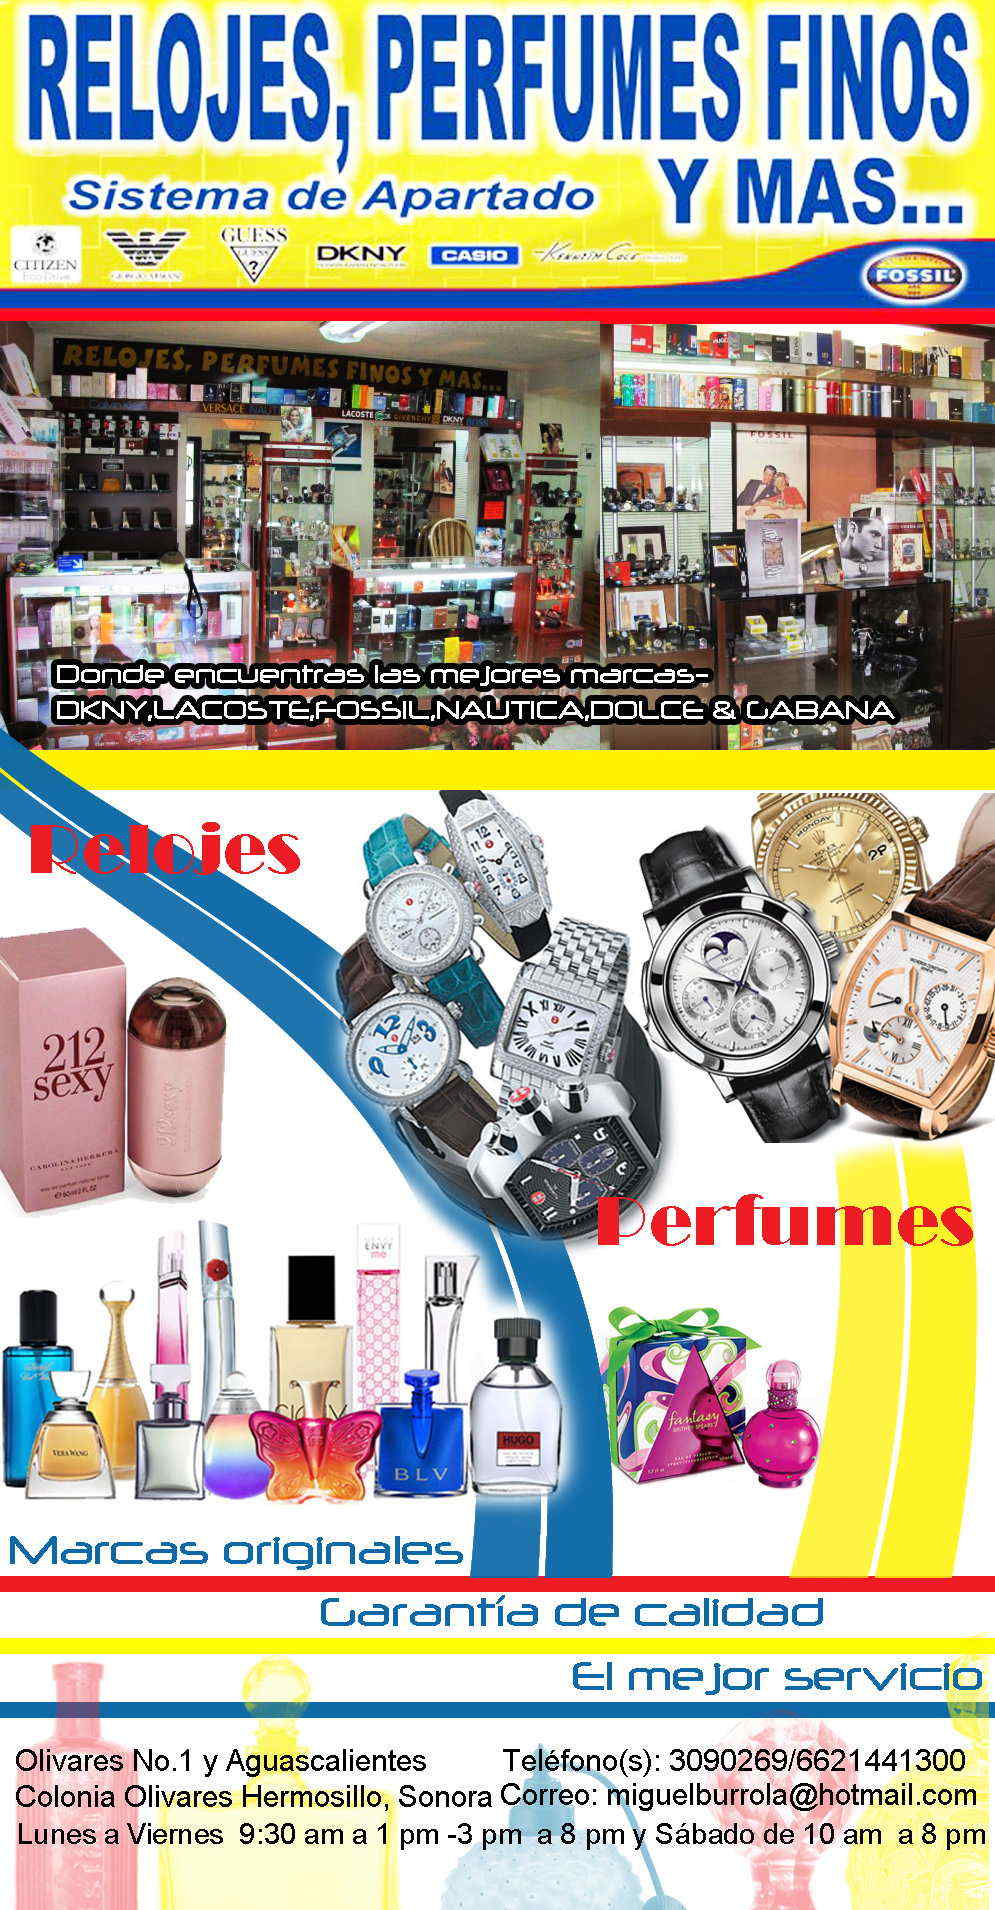 Relojes, Perfumes Finos y Mas...-Relojes,Perfumes Finos y Mas...Donde encuentras las mejores marcas- DKNY,LACOSTE,FOSSIL,NAUTICA,DOLCE & GABANA            